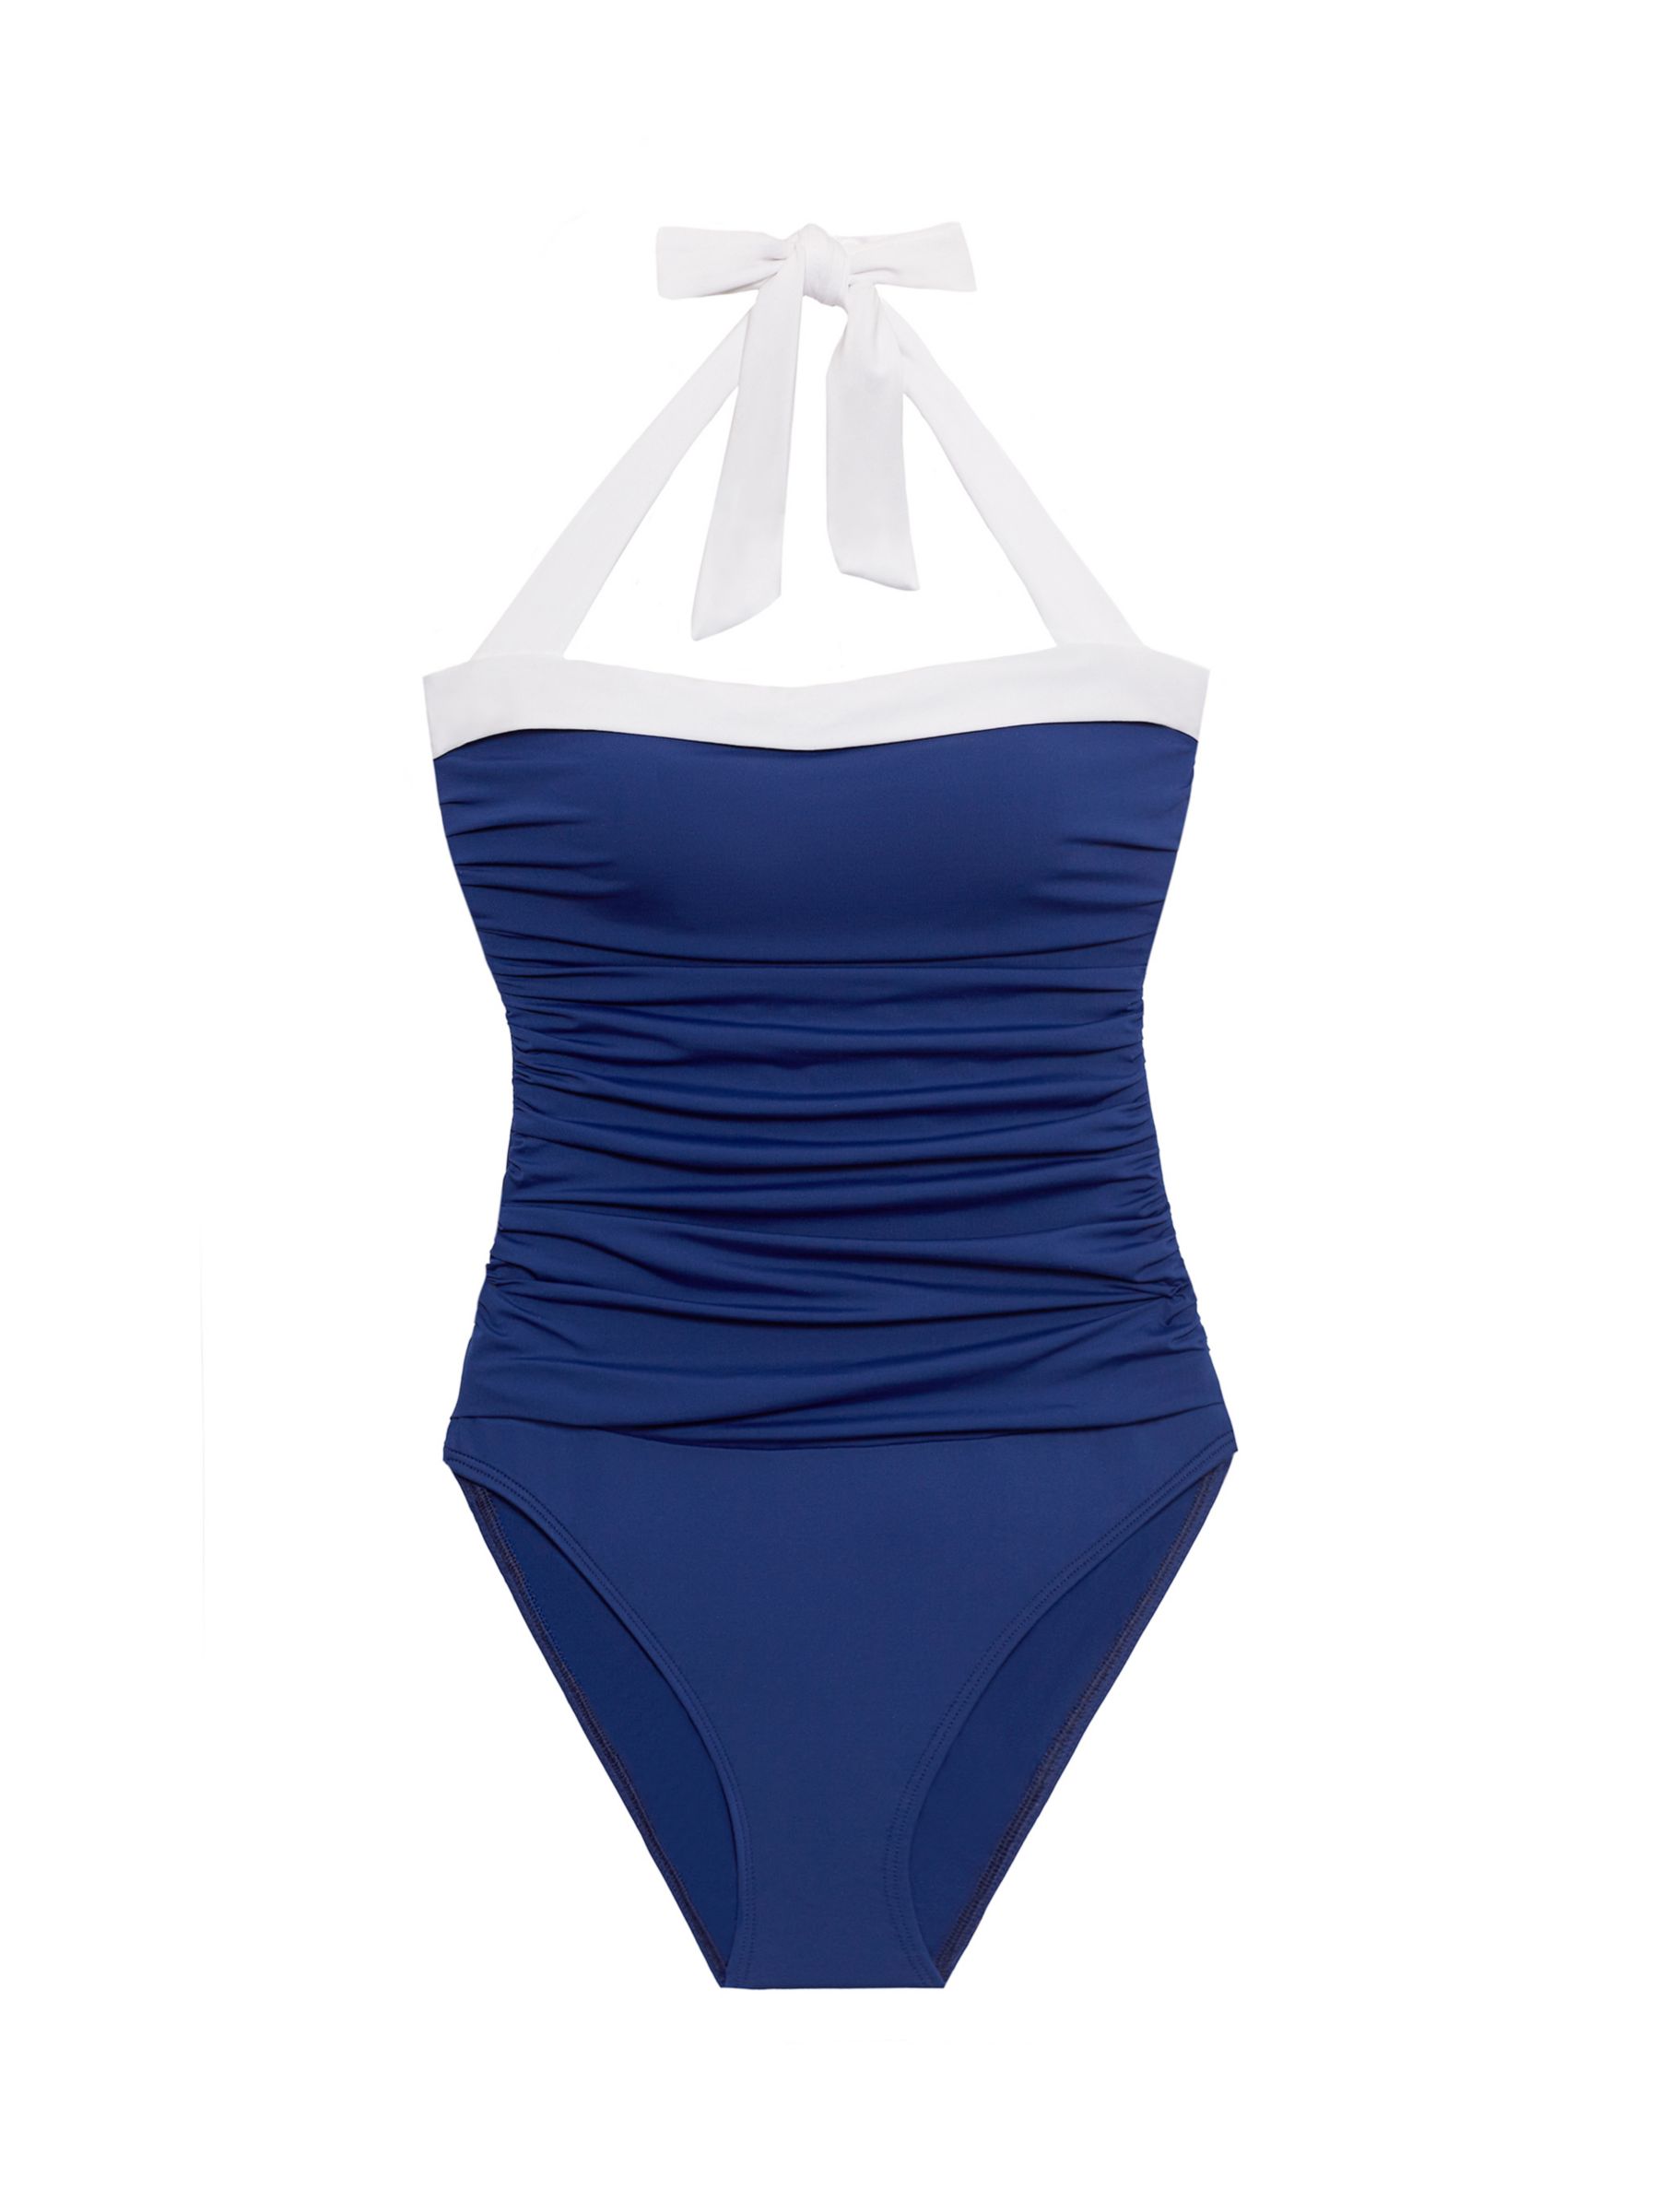 Lauren Ralph Lauren Shirred Contrast Trim Swimsuit, Sapphire, 8